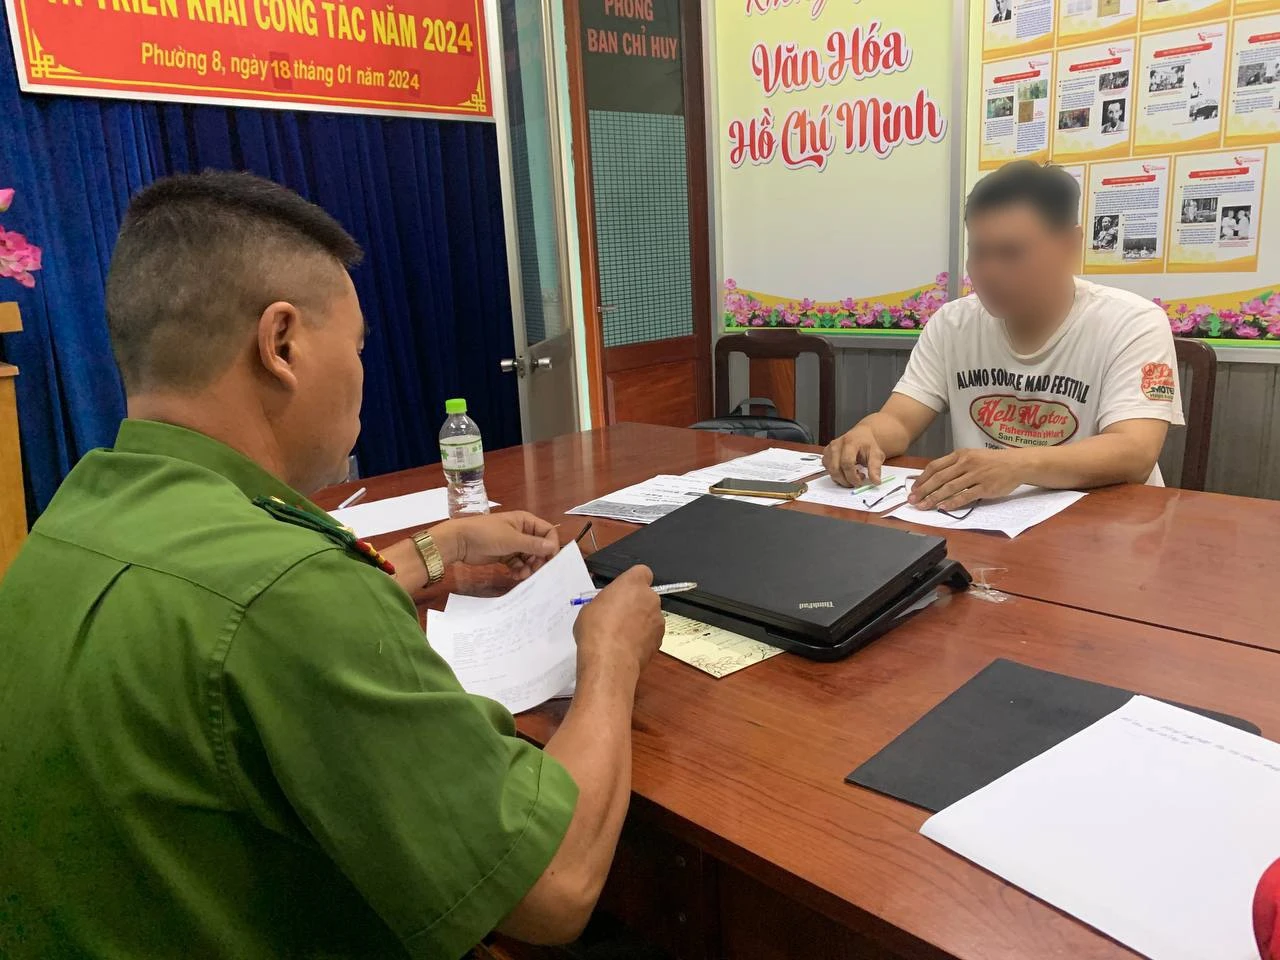 Triệu tập 3 người đăng tin sai sự thật về Tổng Bí thư Nguyễn Phú Trọng